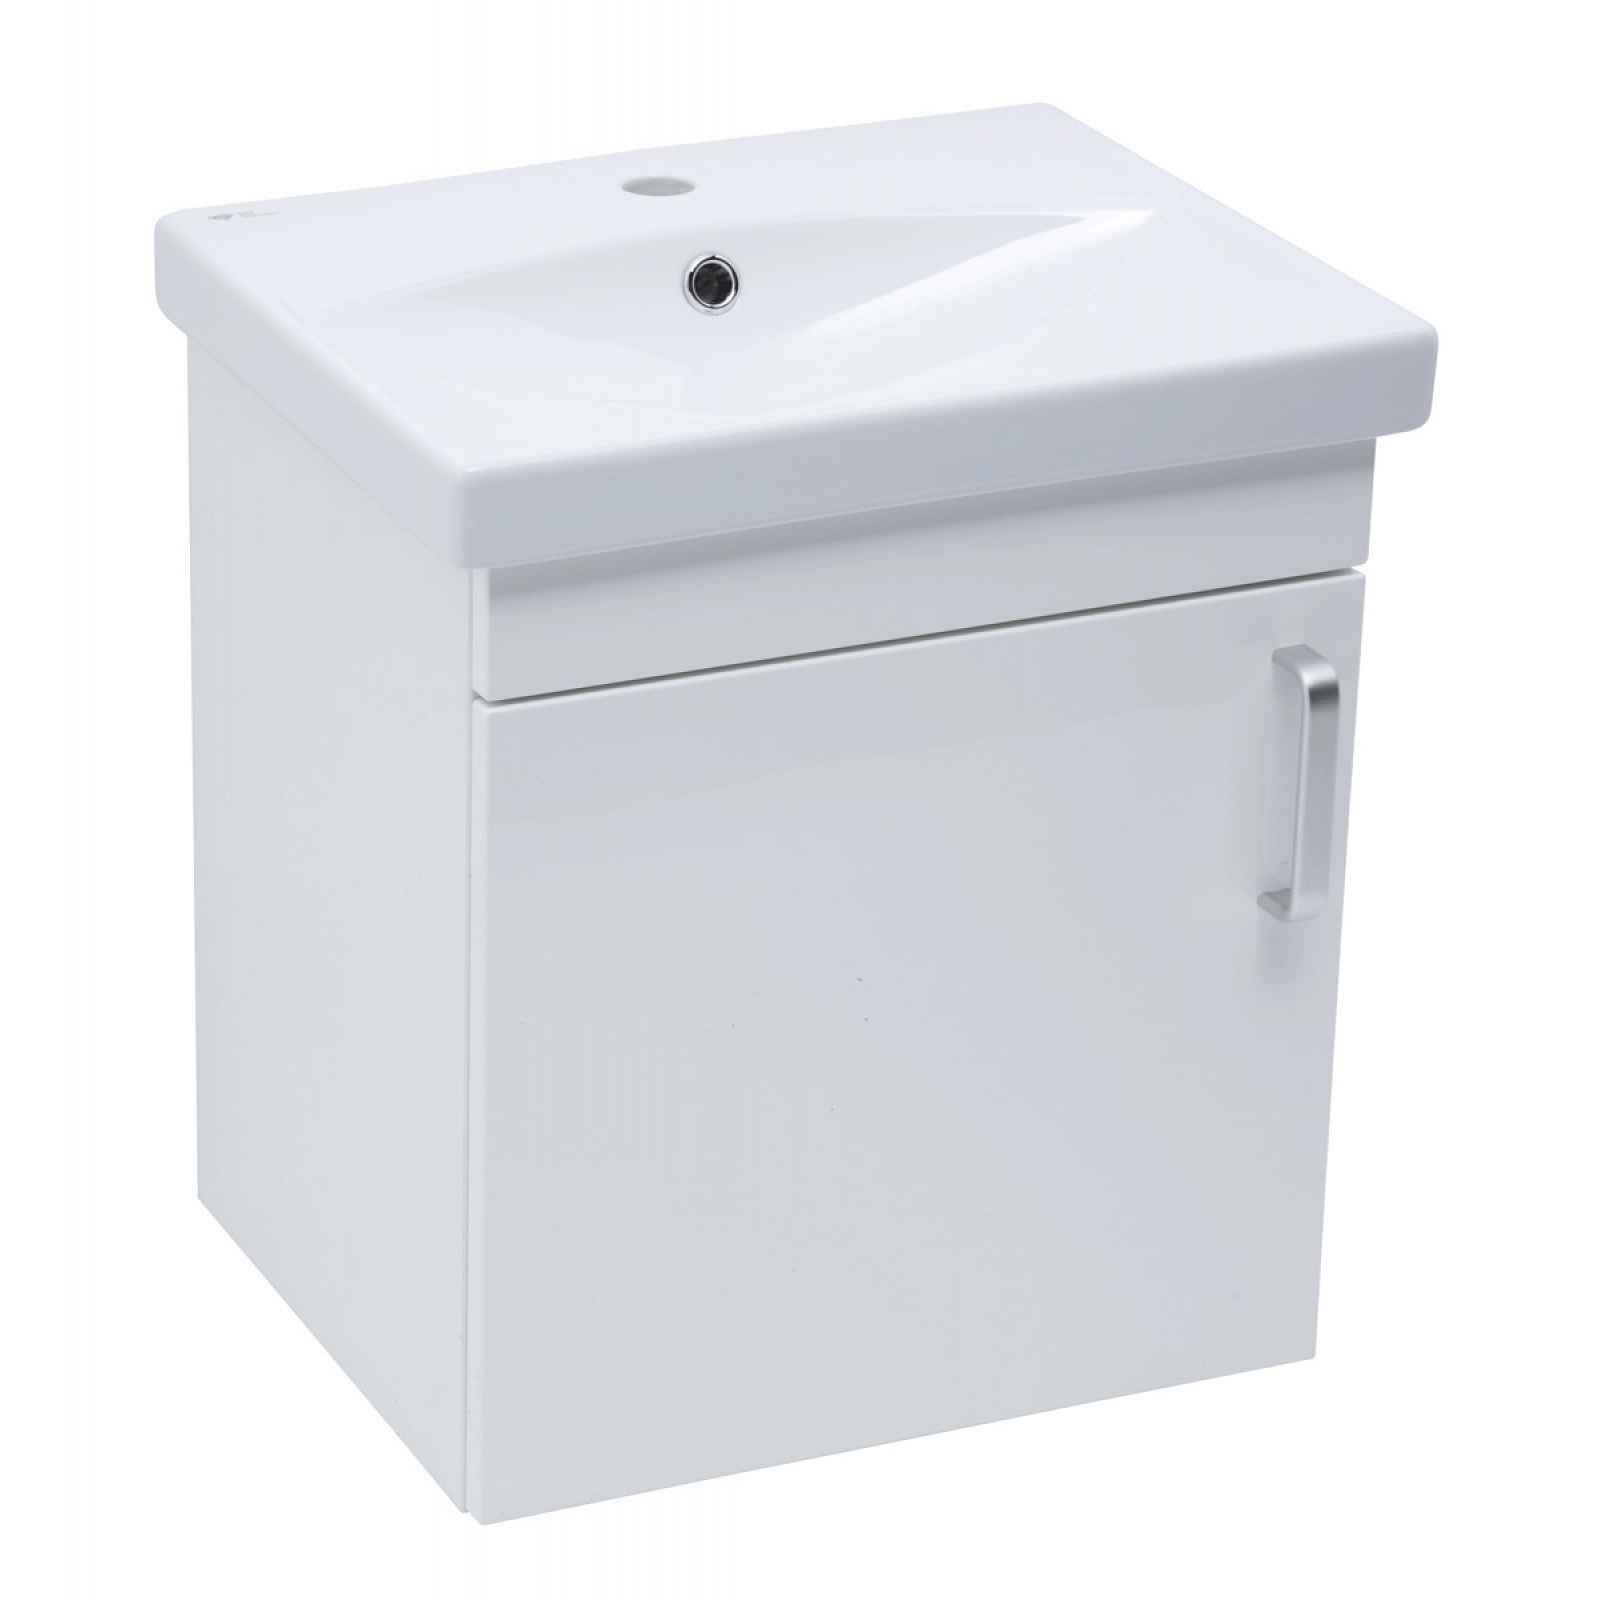 Koupelnová skříňka s umyvadlem Naturel Vario Dekor 50x51x40 cm bílá lesk VARIO250BIBL